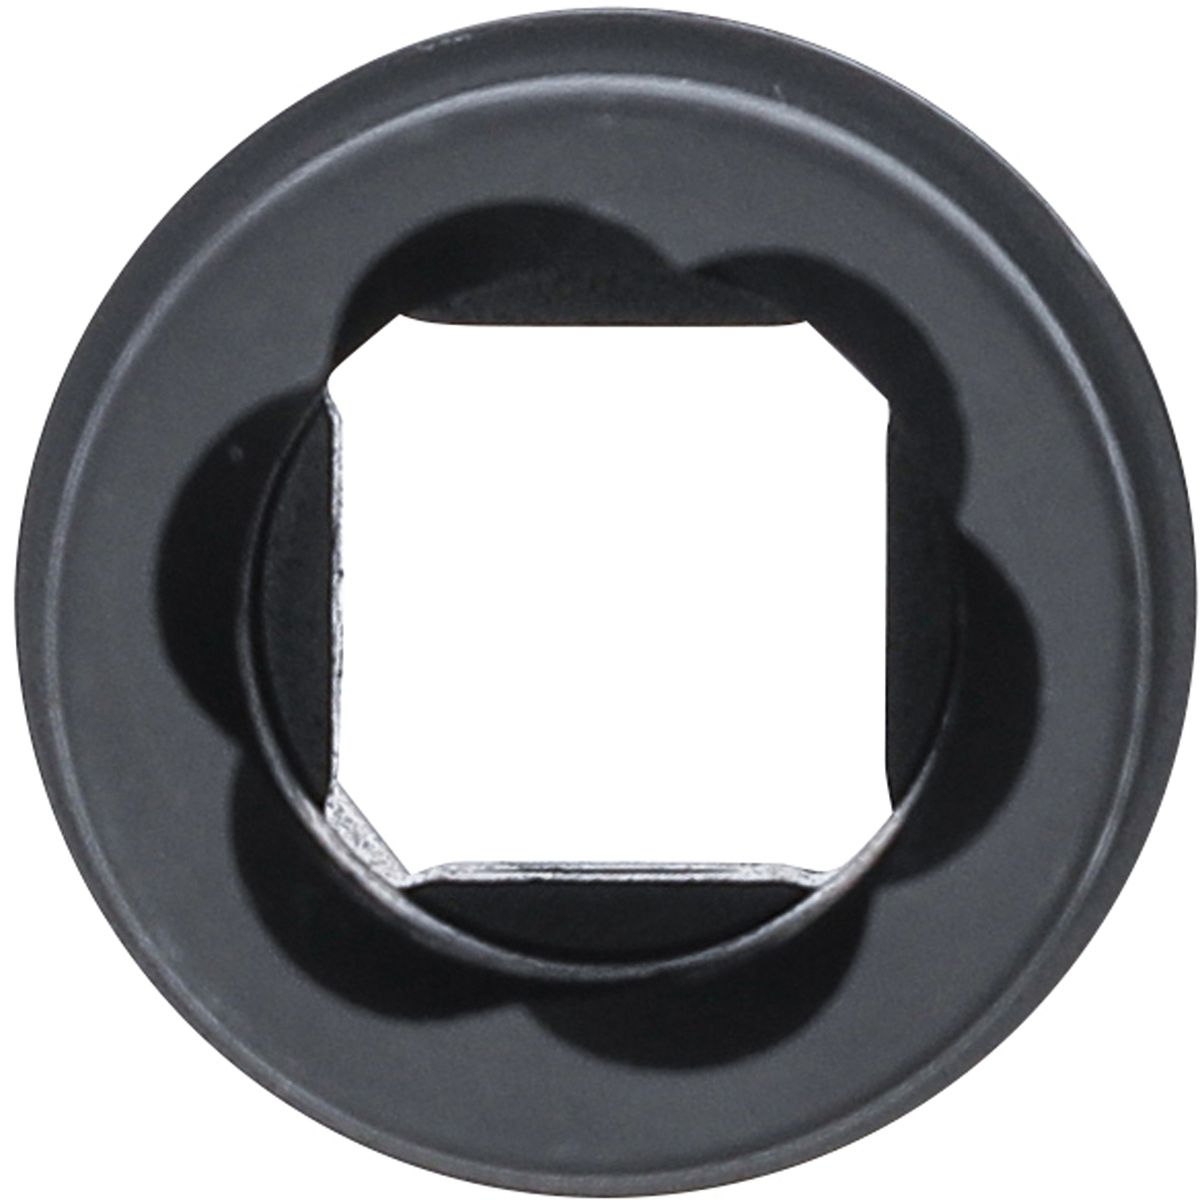 Inserto especial de destornillado - con inserto reversible 17 mm | 12,5 mm (1/2")